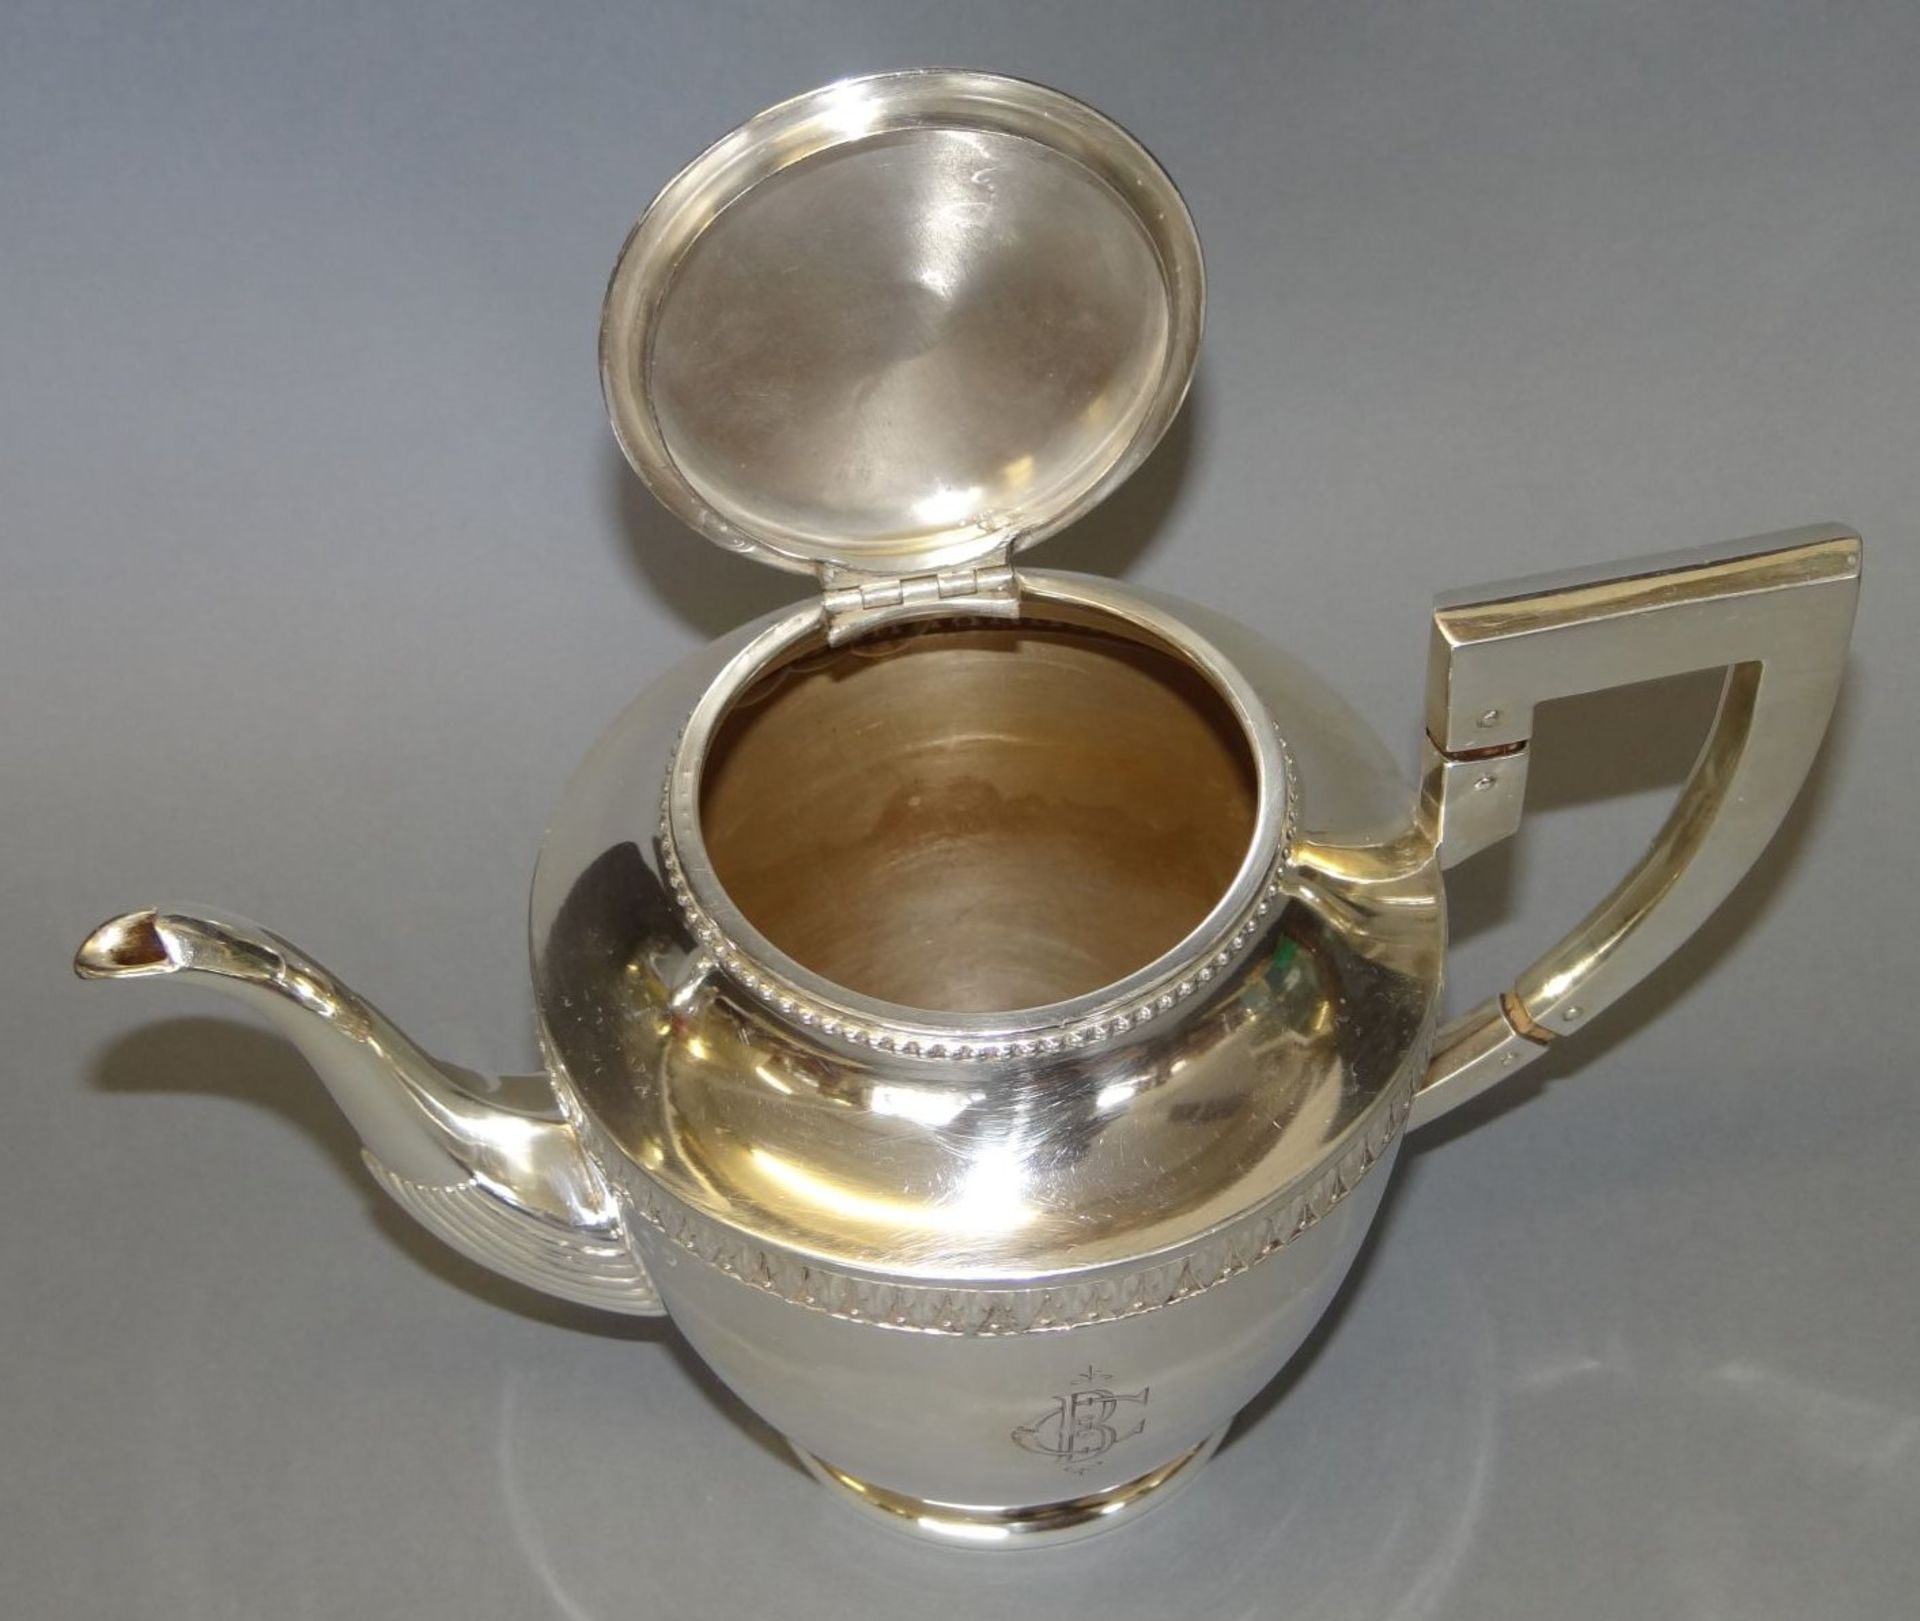 Silber-Teekanne-800- mit Ziermonogramm "CB", guter Zustand, H-17 cm, 443 gr. - Bild 3 aus 5